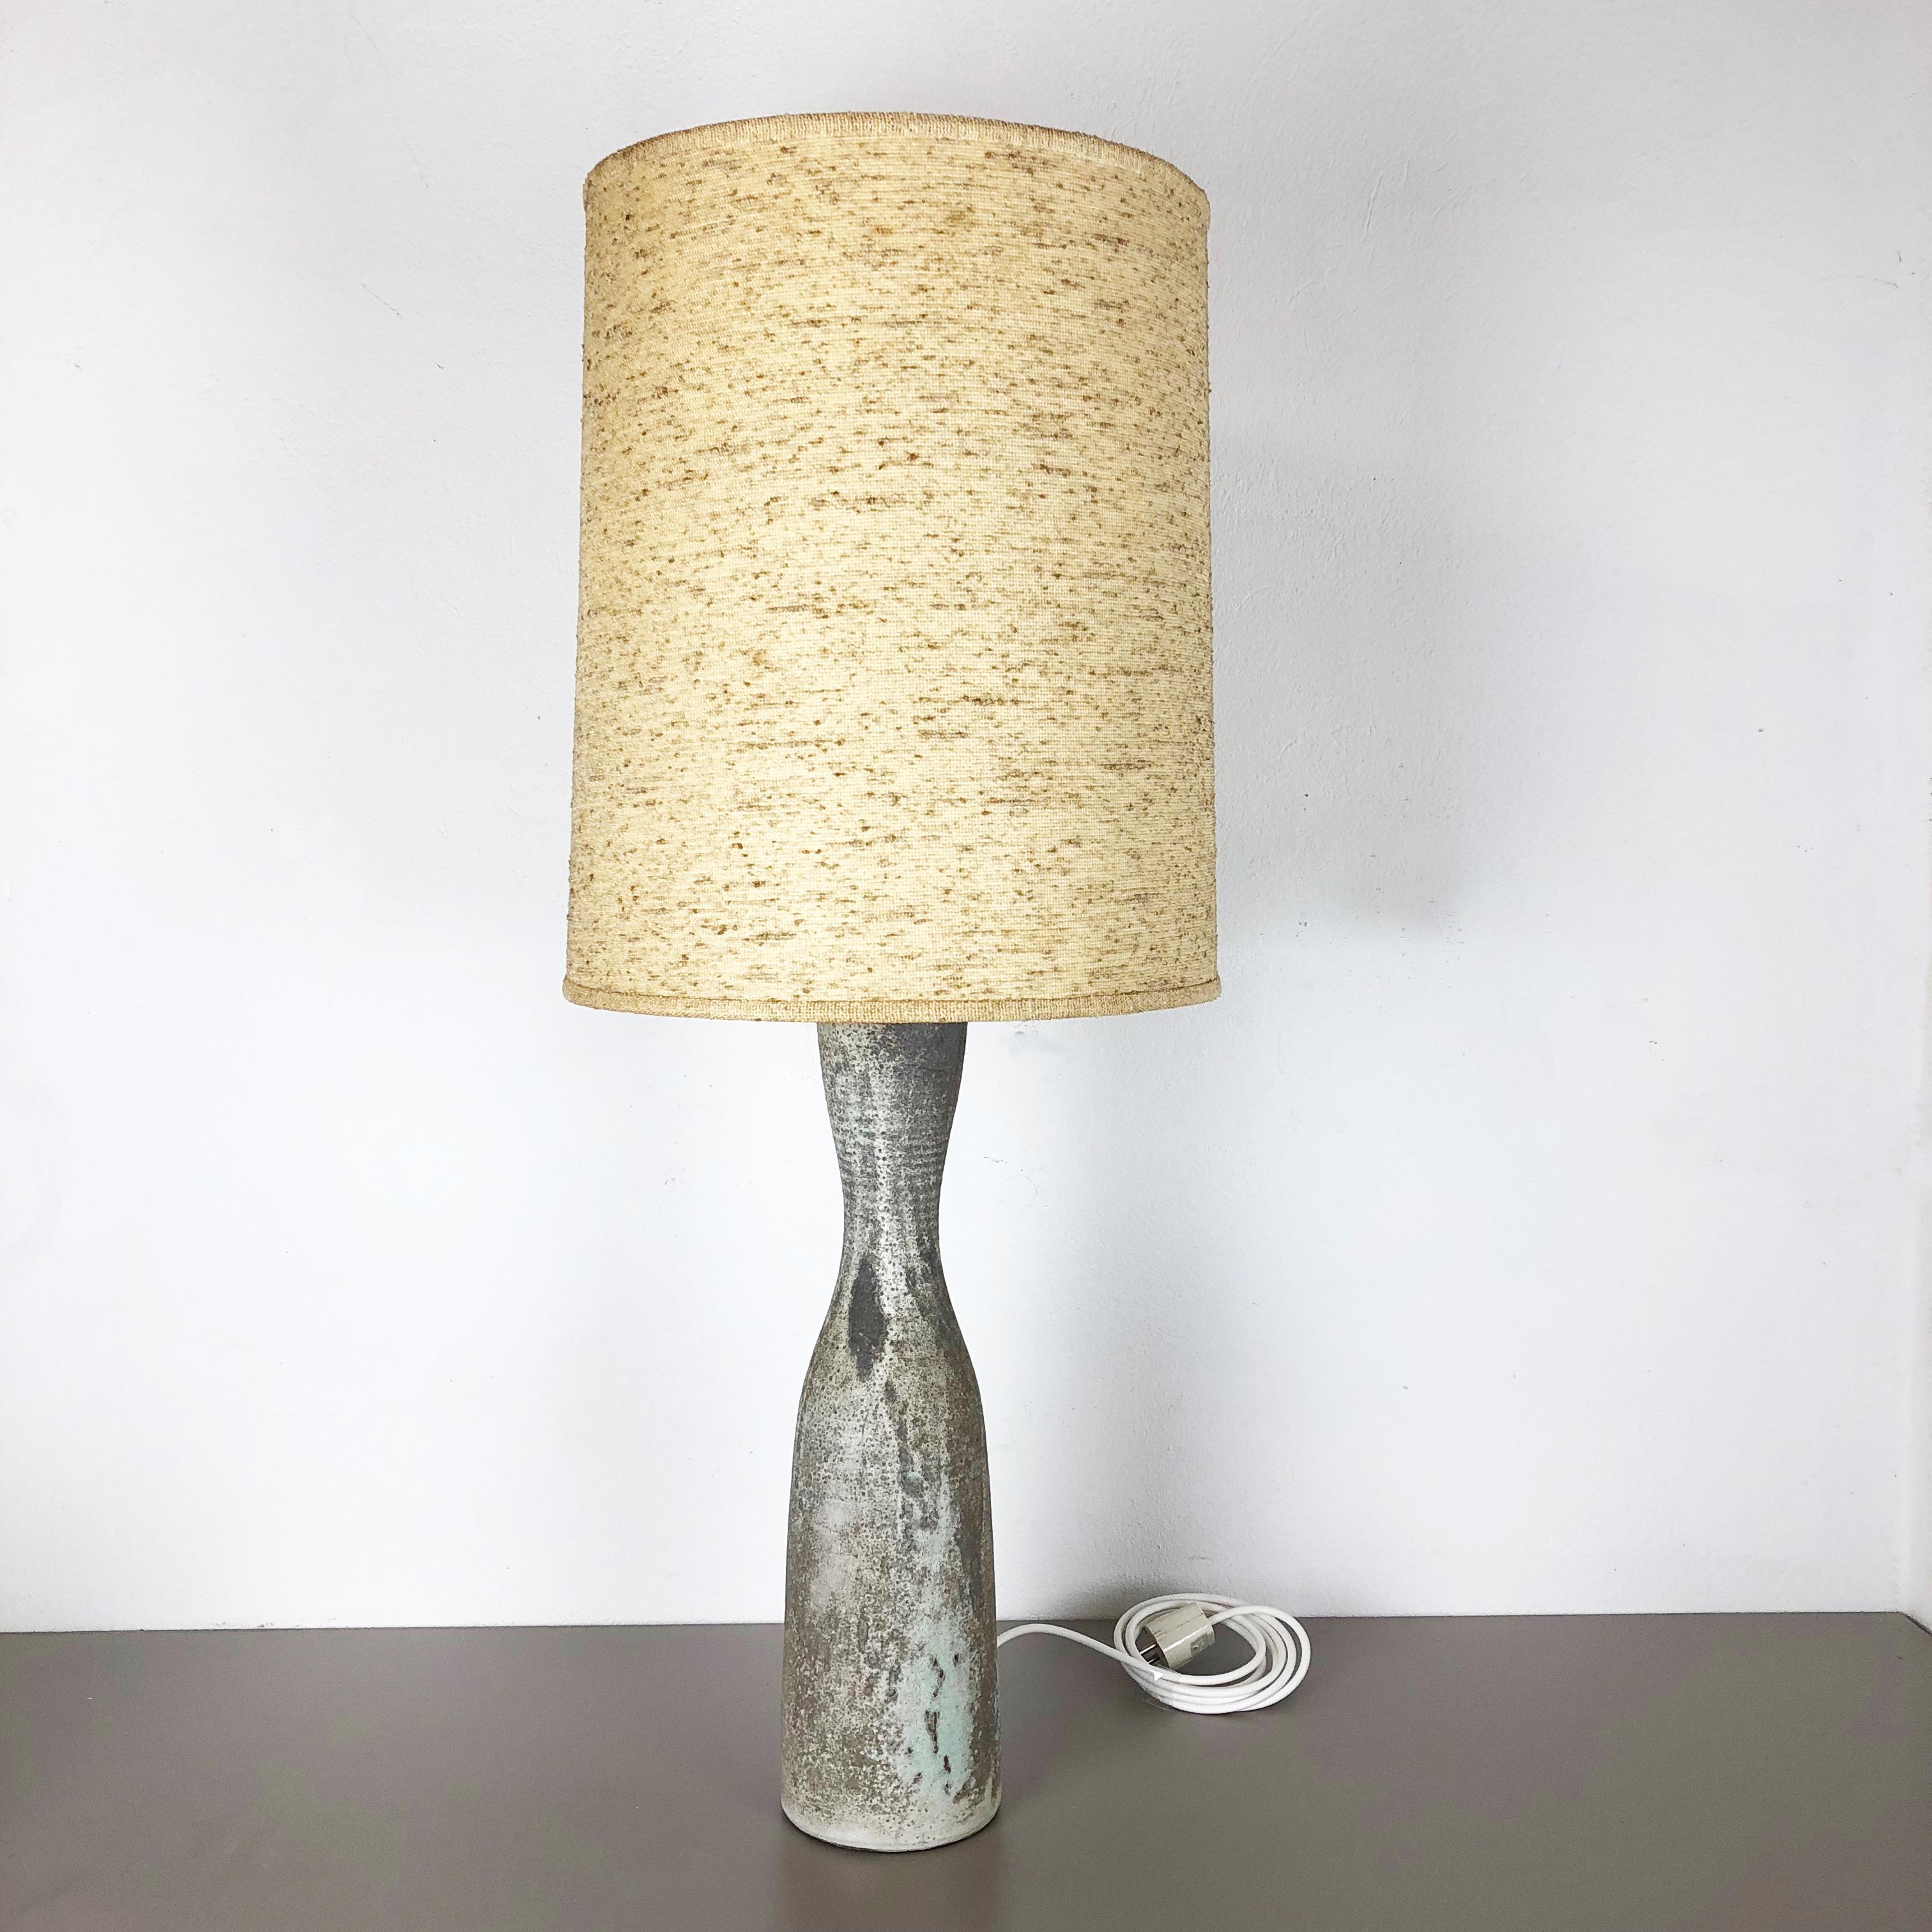 Article :

impressionnante grande lampe de table en céramique de 95 cm


Producteur :

Mobach, Pays-Bas


Concepteur :

Piet Knepper




Décennie :

1960-1965



Description :

cette base de lampe vintage originale en